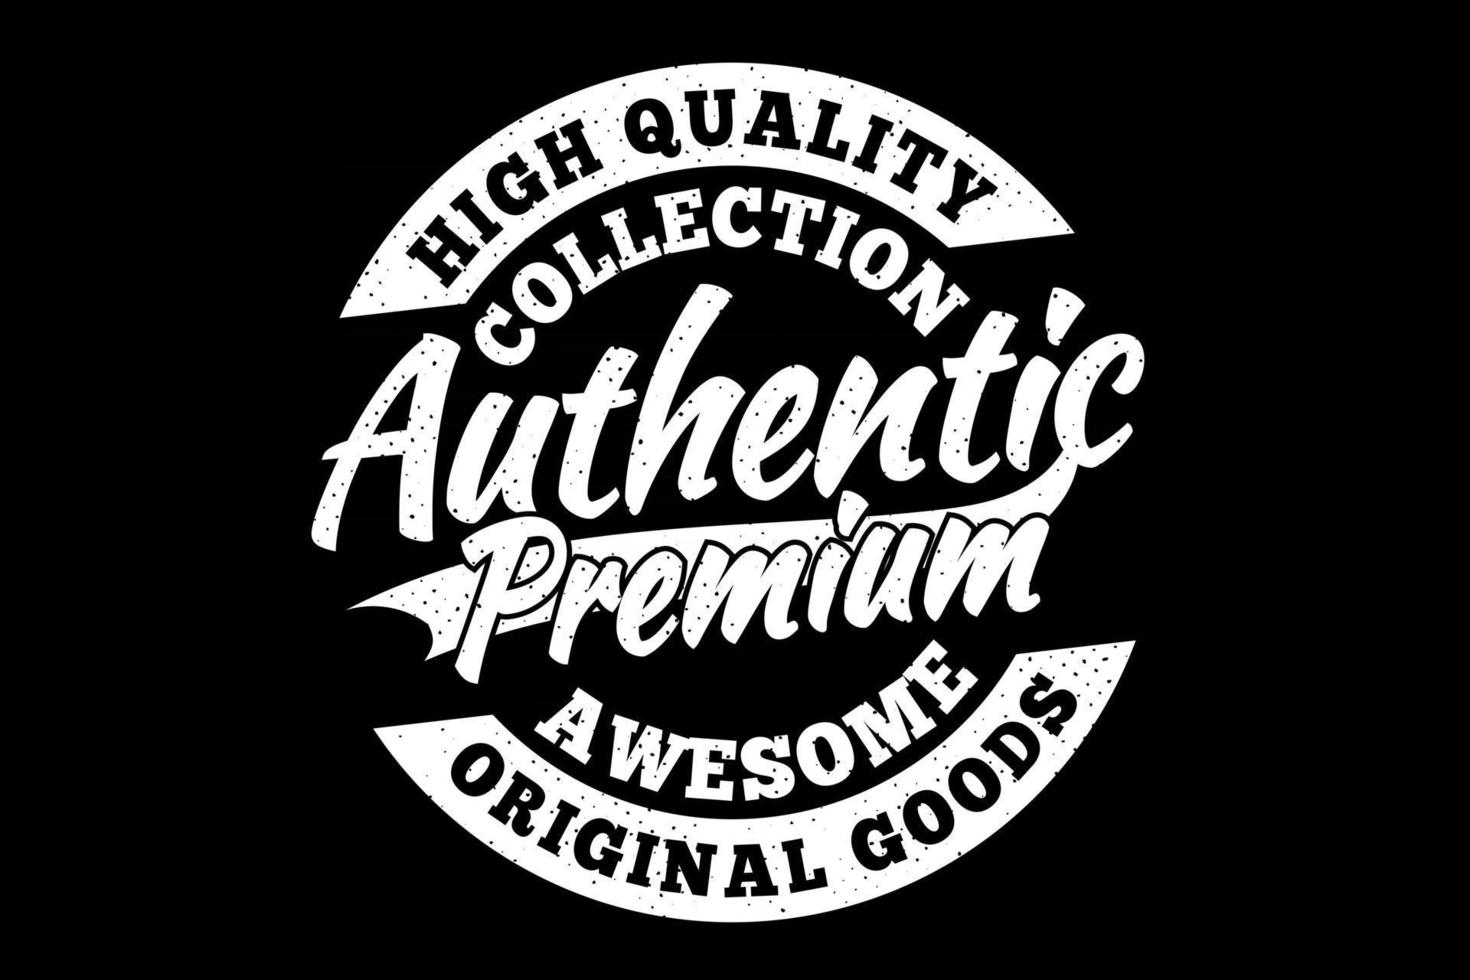 t-shirt van hoge kwaliteit authentieke premium originele goederen vintage stijl vector